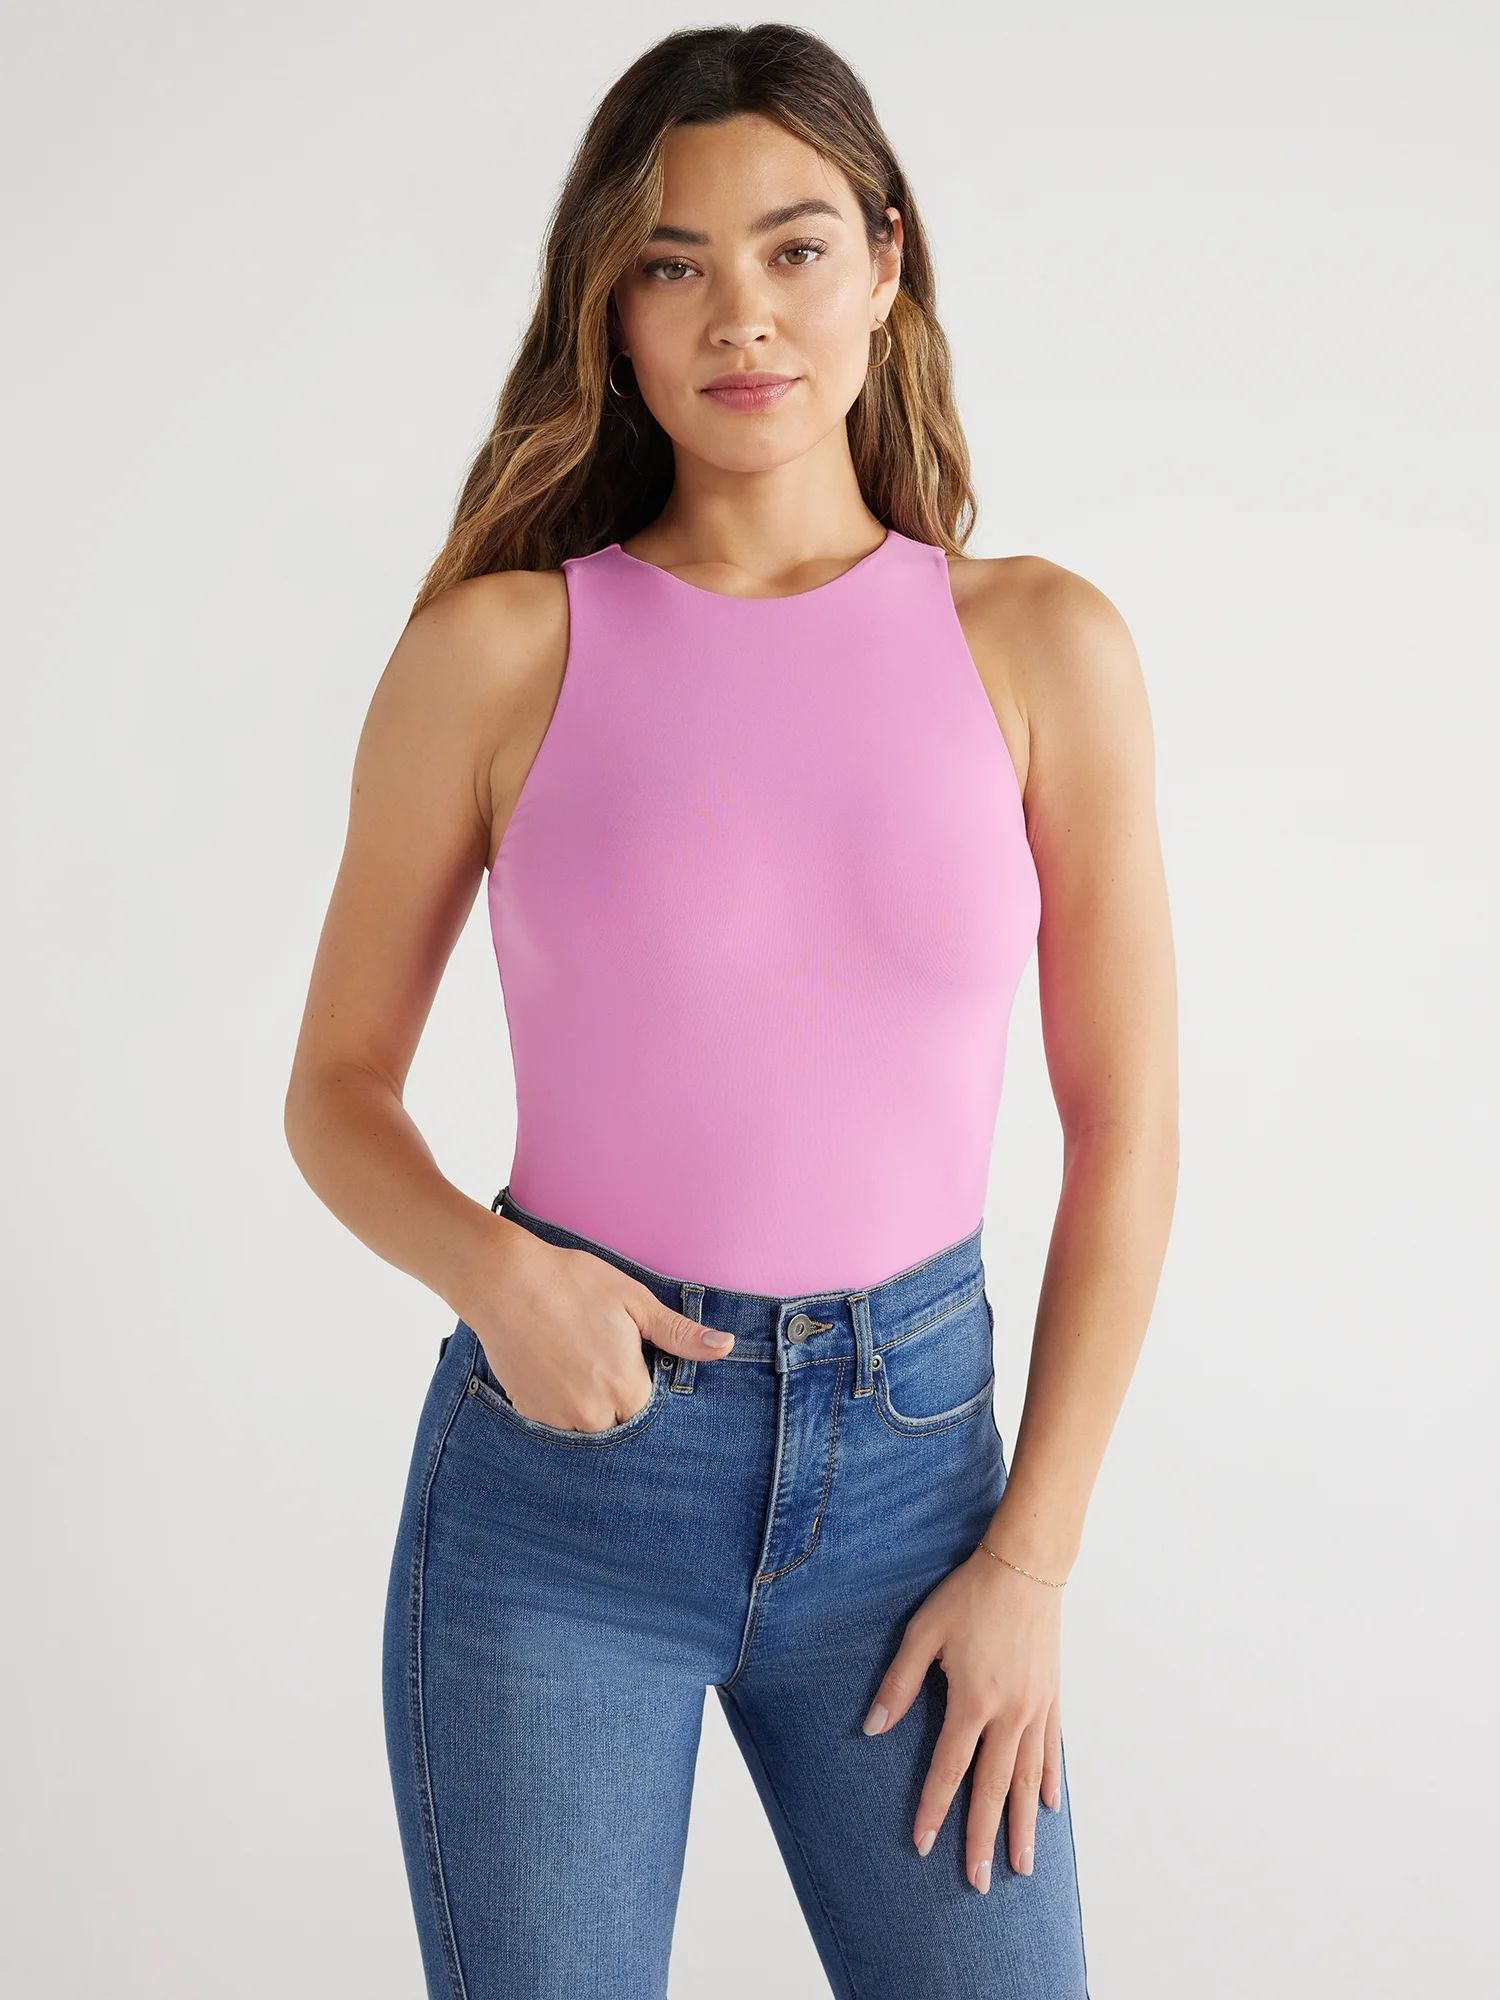 Sofia Jeans Women's High Neck Tank Top, Sizes XS-XXXL - Walmart.com | Walmart (US)